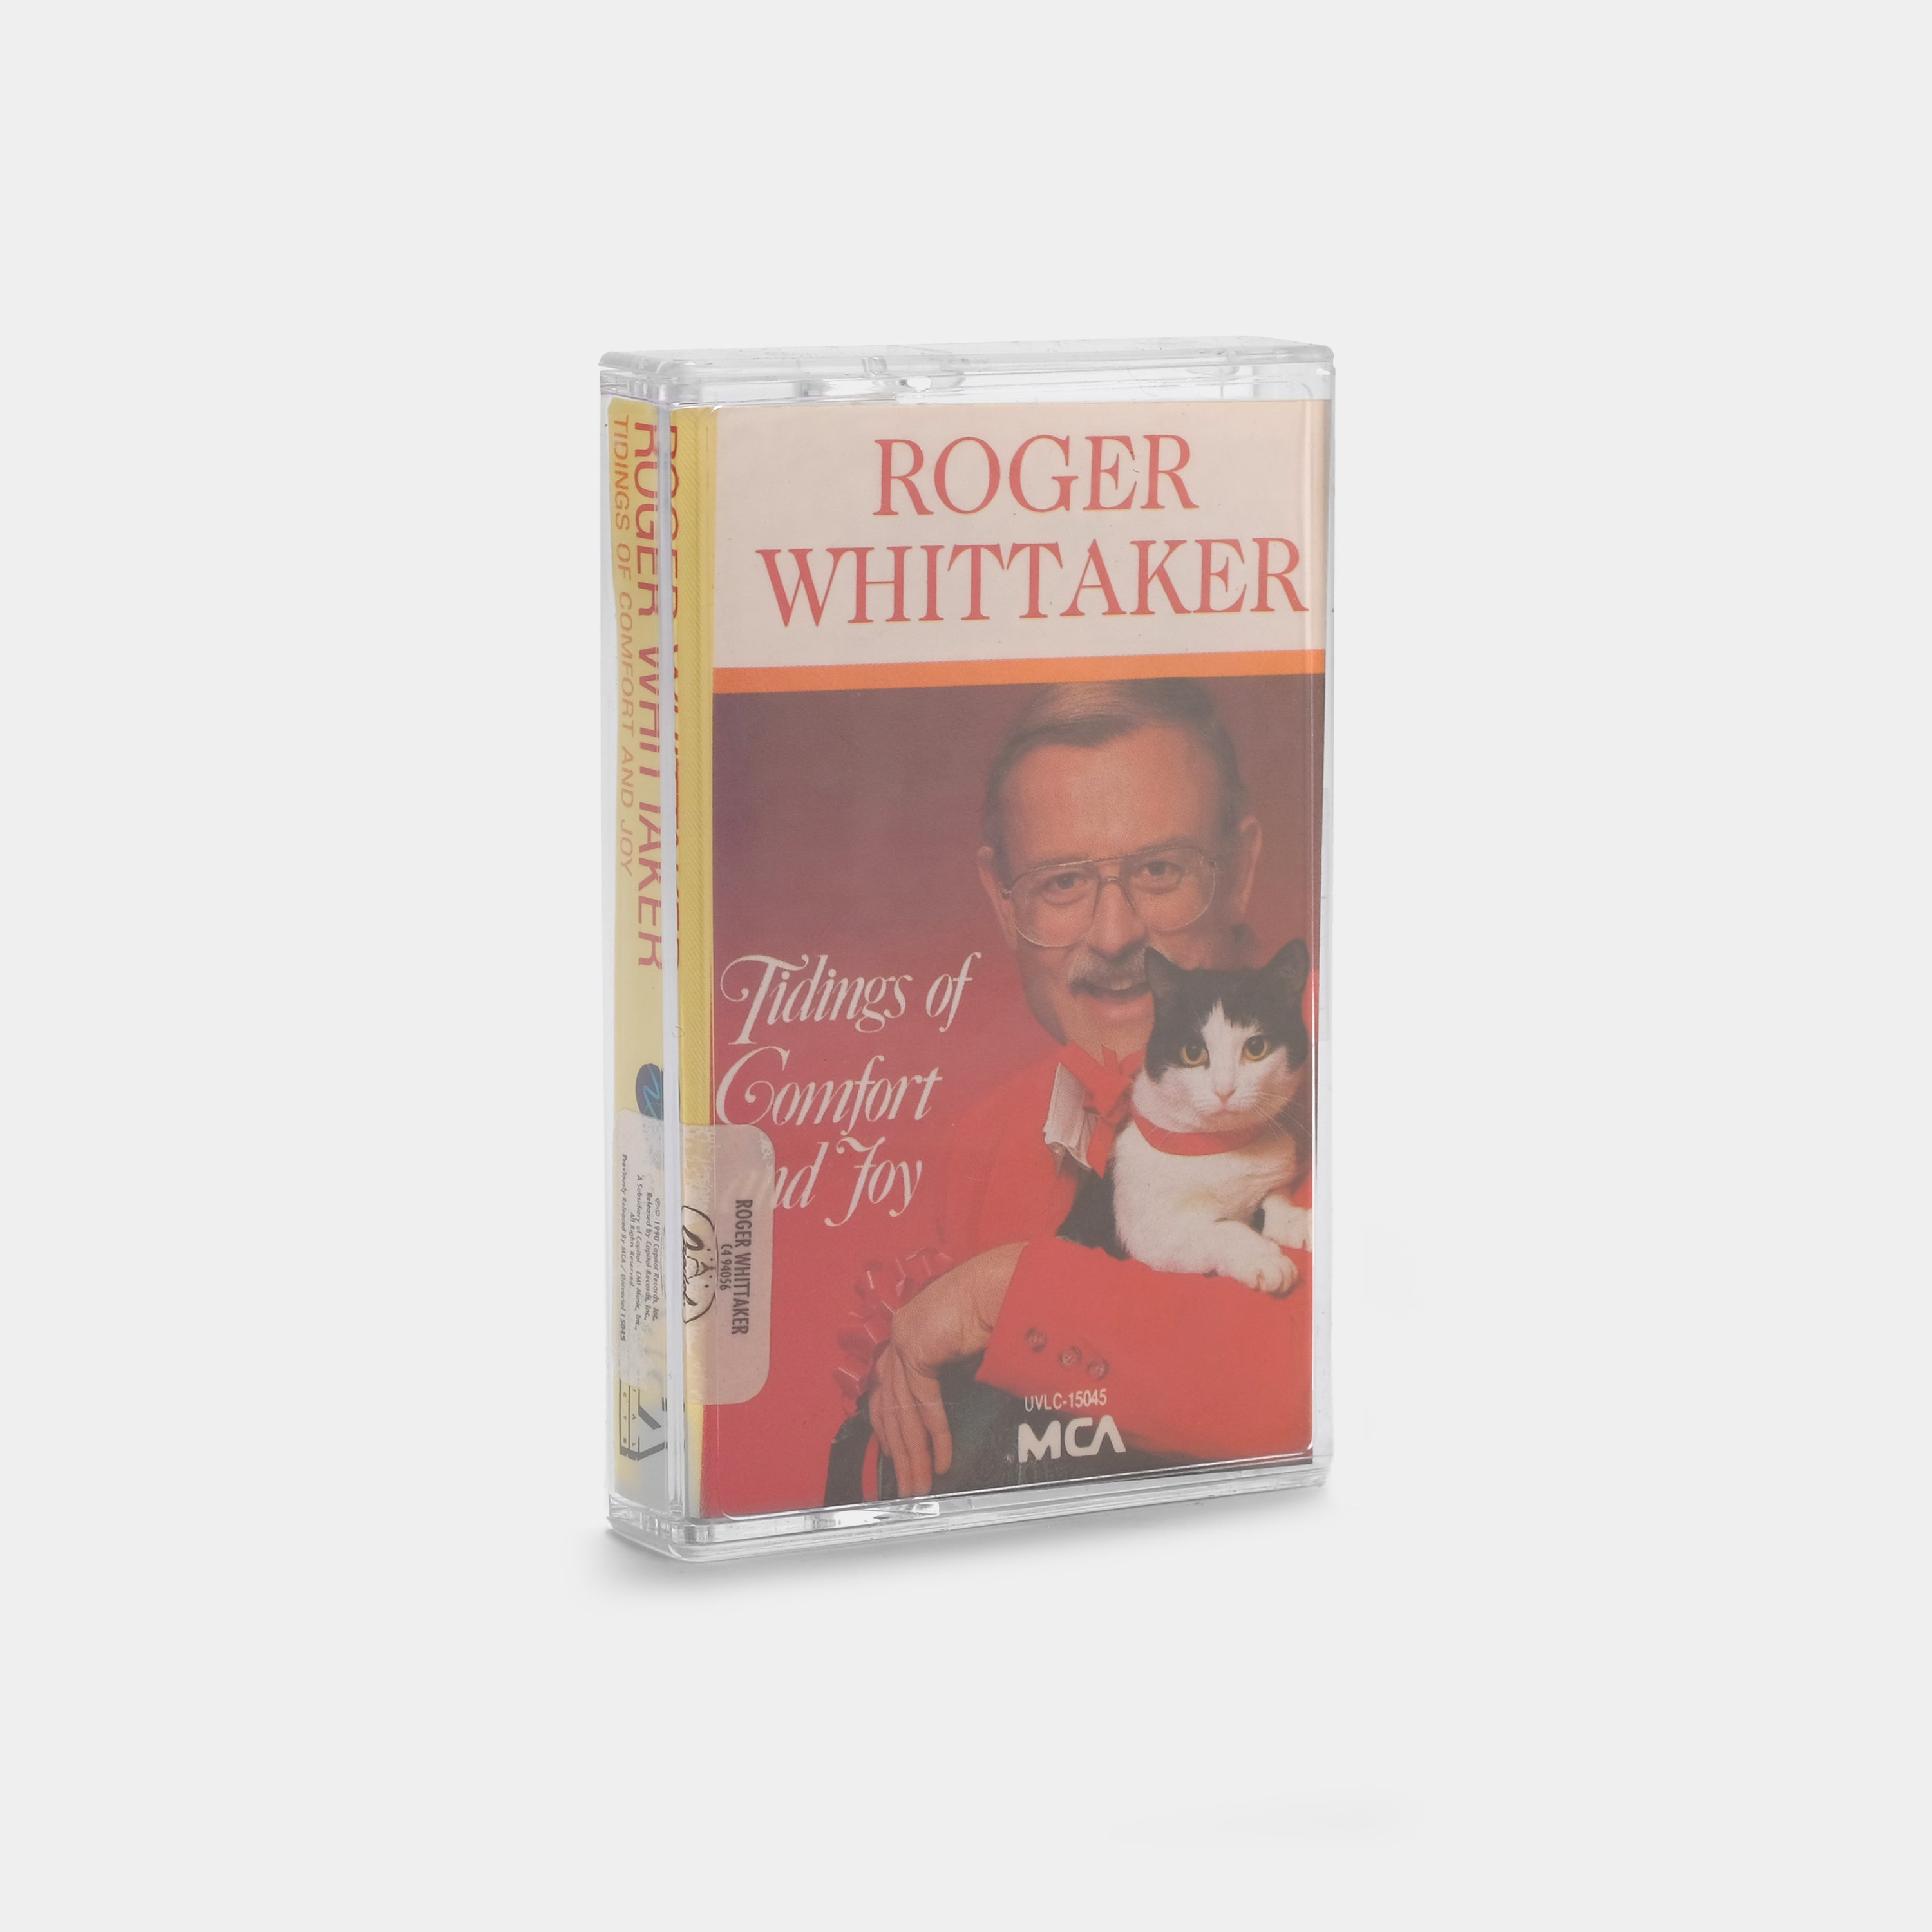 Roger Whittaker - Tidings of Comfort and Joy Cassette Tape